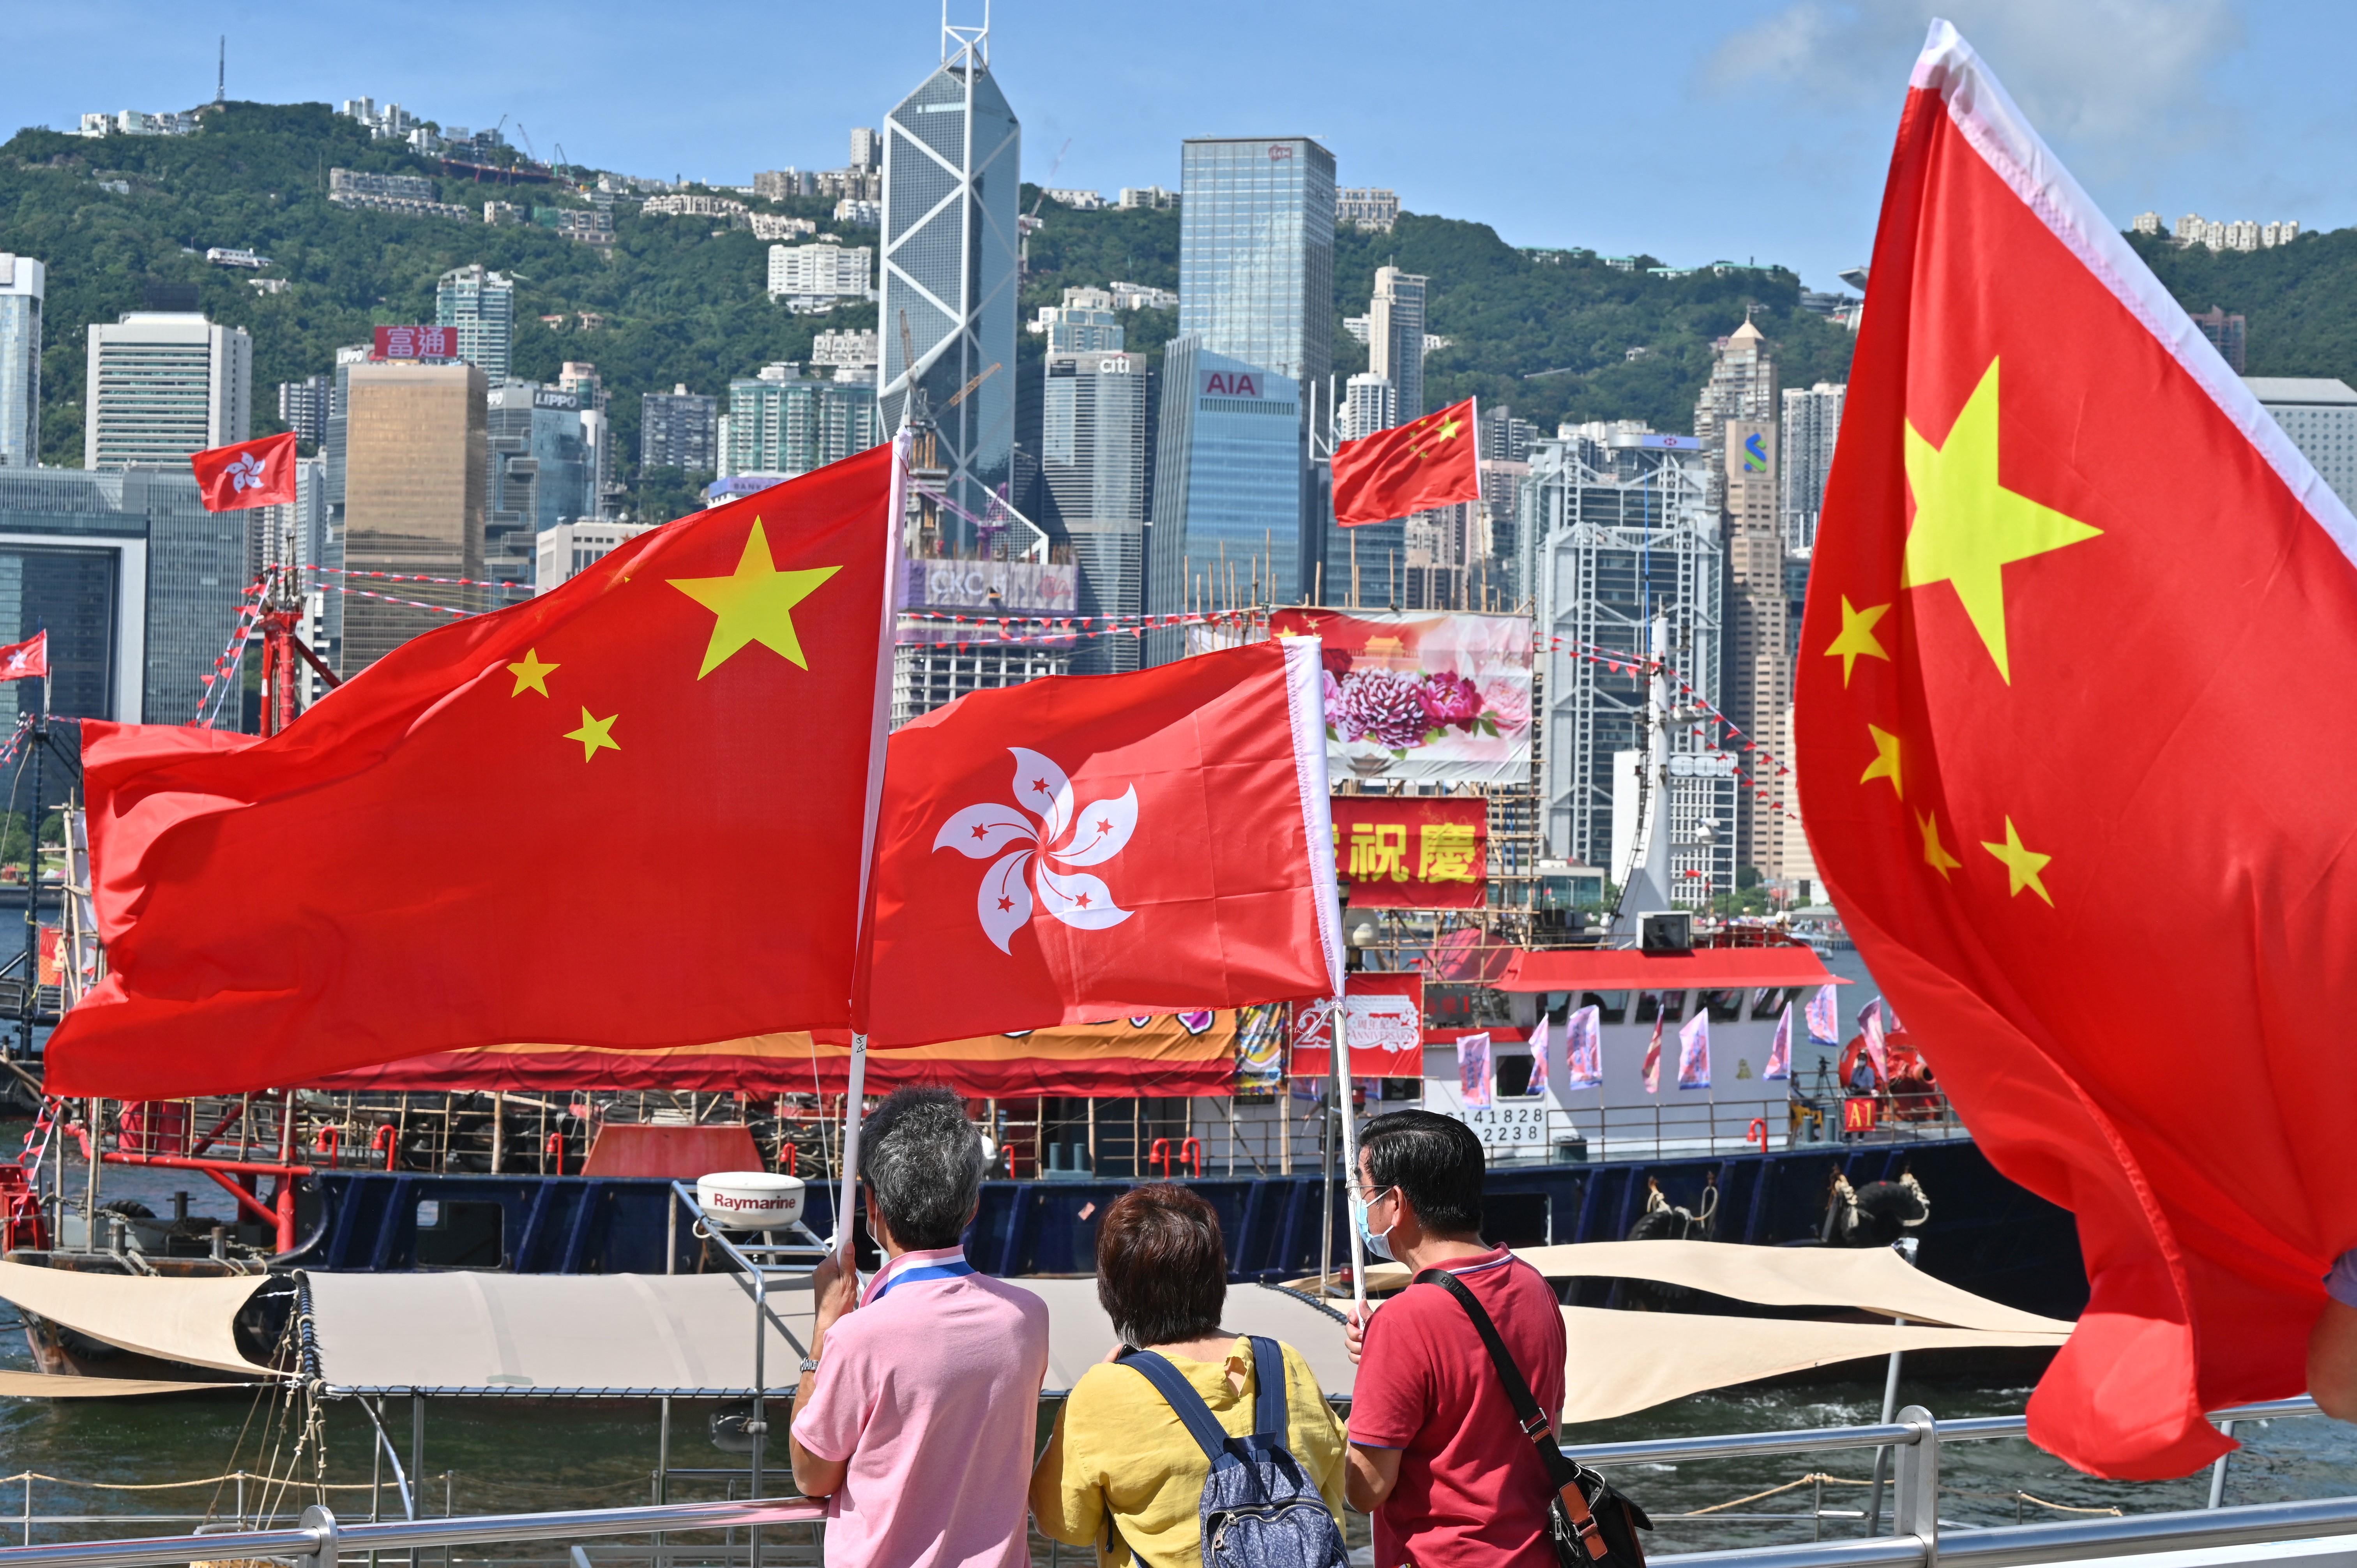 Chính trị Hồng Kông có sự biến động trong những năm gần đây, tuy nhiên, những nét văn hóa độc đáo và tinh thần đấu tranh của người dân vẫn được giữ gìn. Hãy cùng tìm hiểu về lịch sử và văn hóa của Hồng Kông qua hình ảnh đẹp và thông tin chính xác.